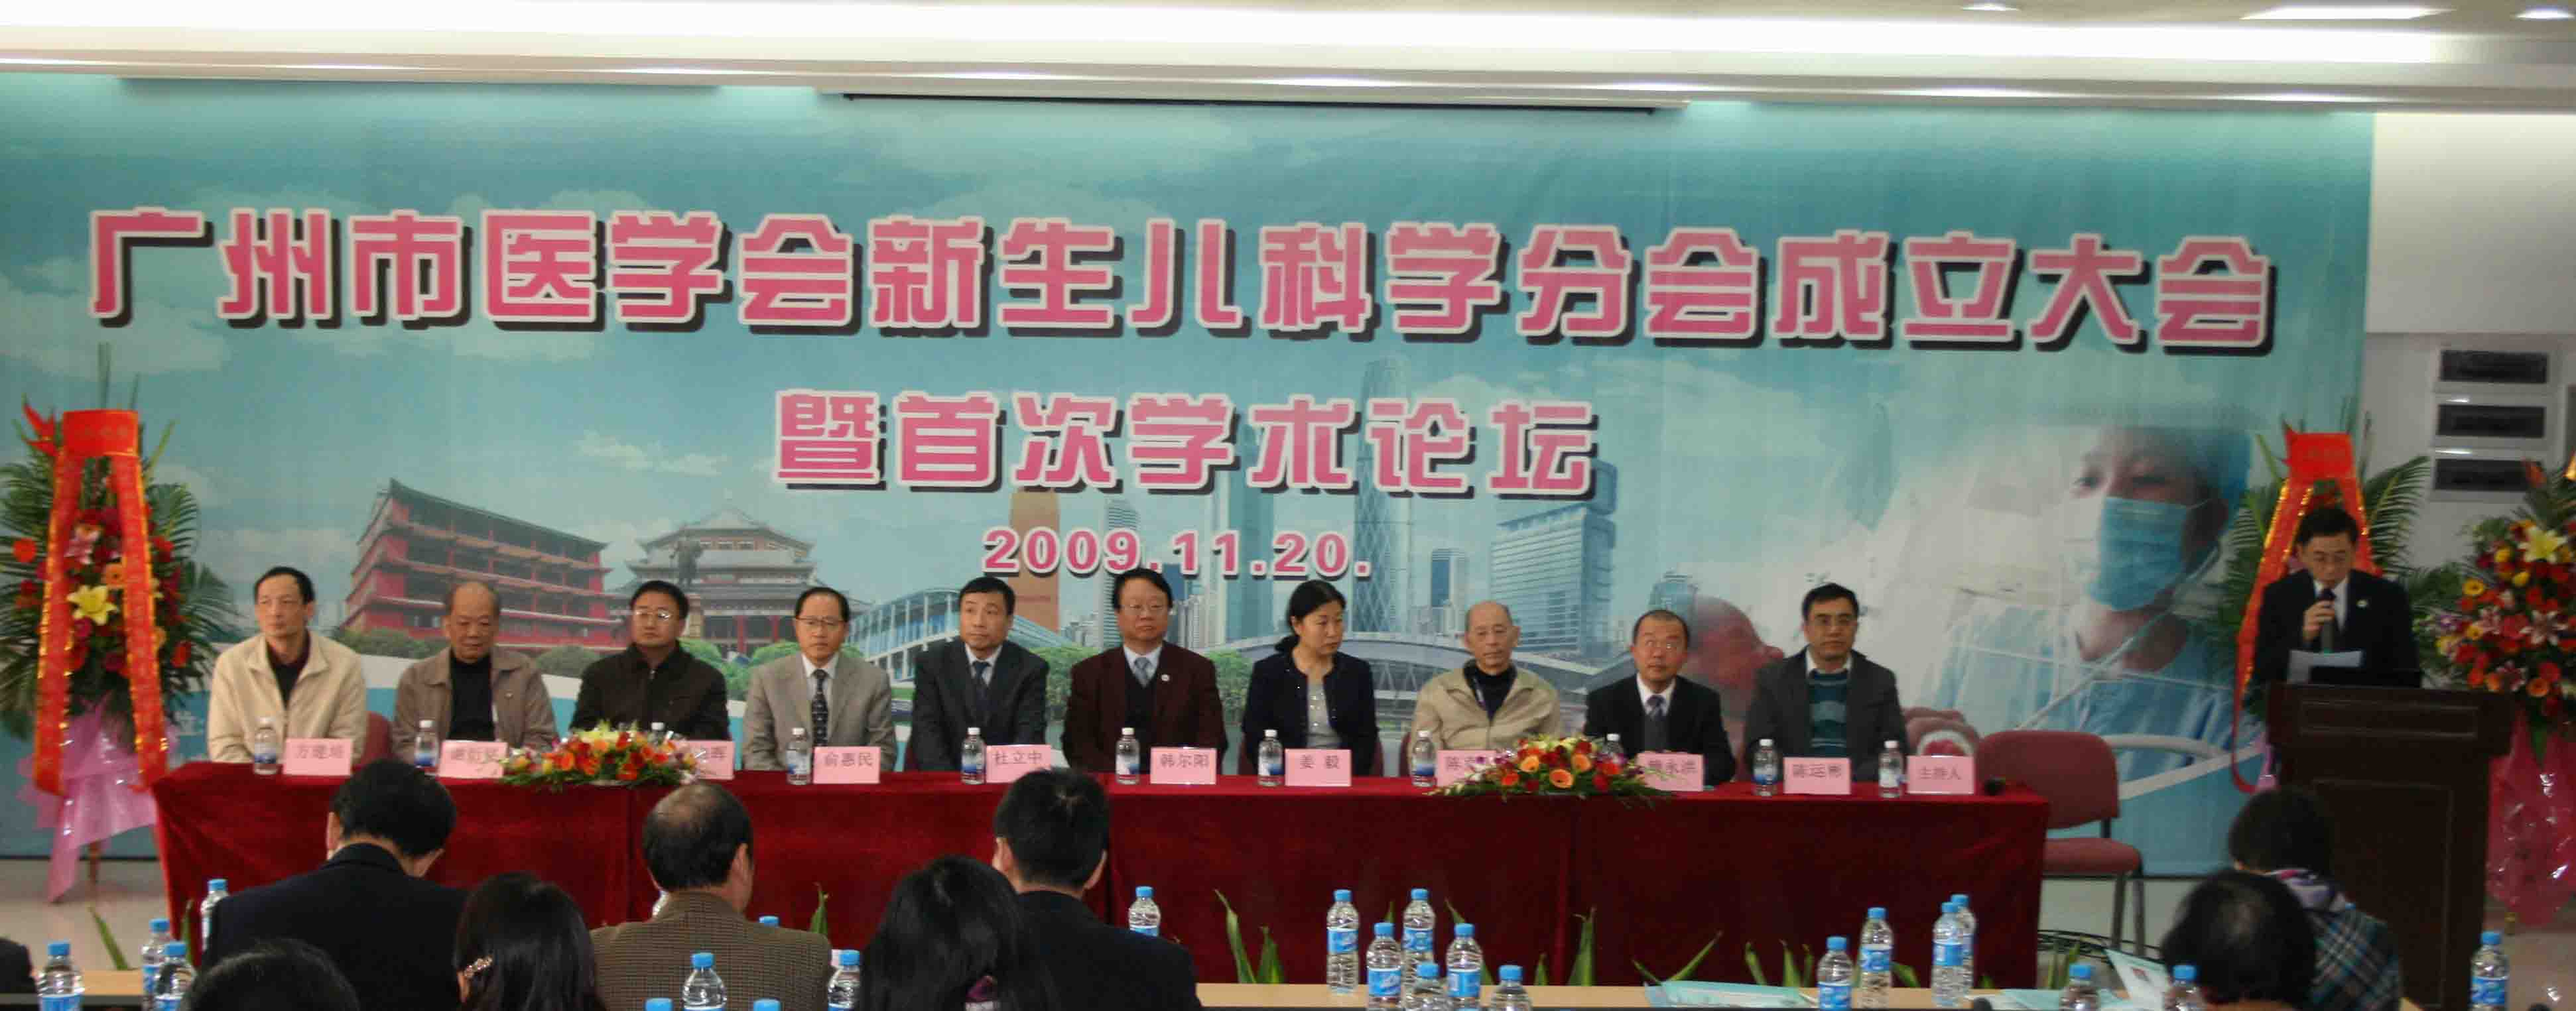 广州市医学会新生儿科学分会成立大会暨新生儿科学学术会议开幕仪式